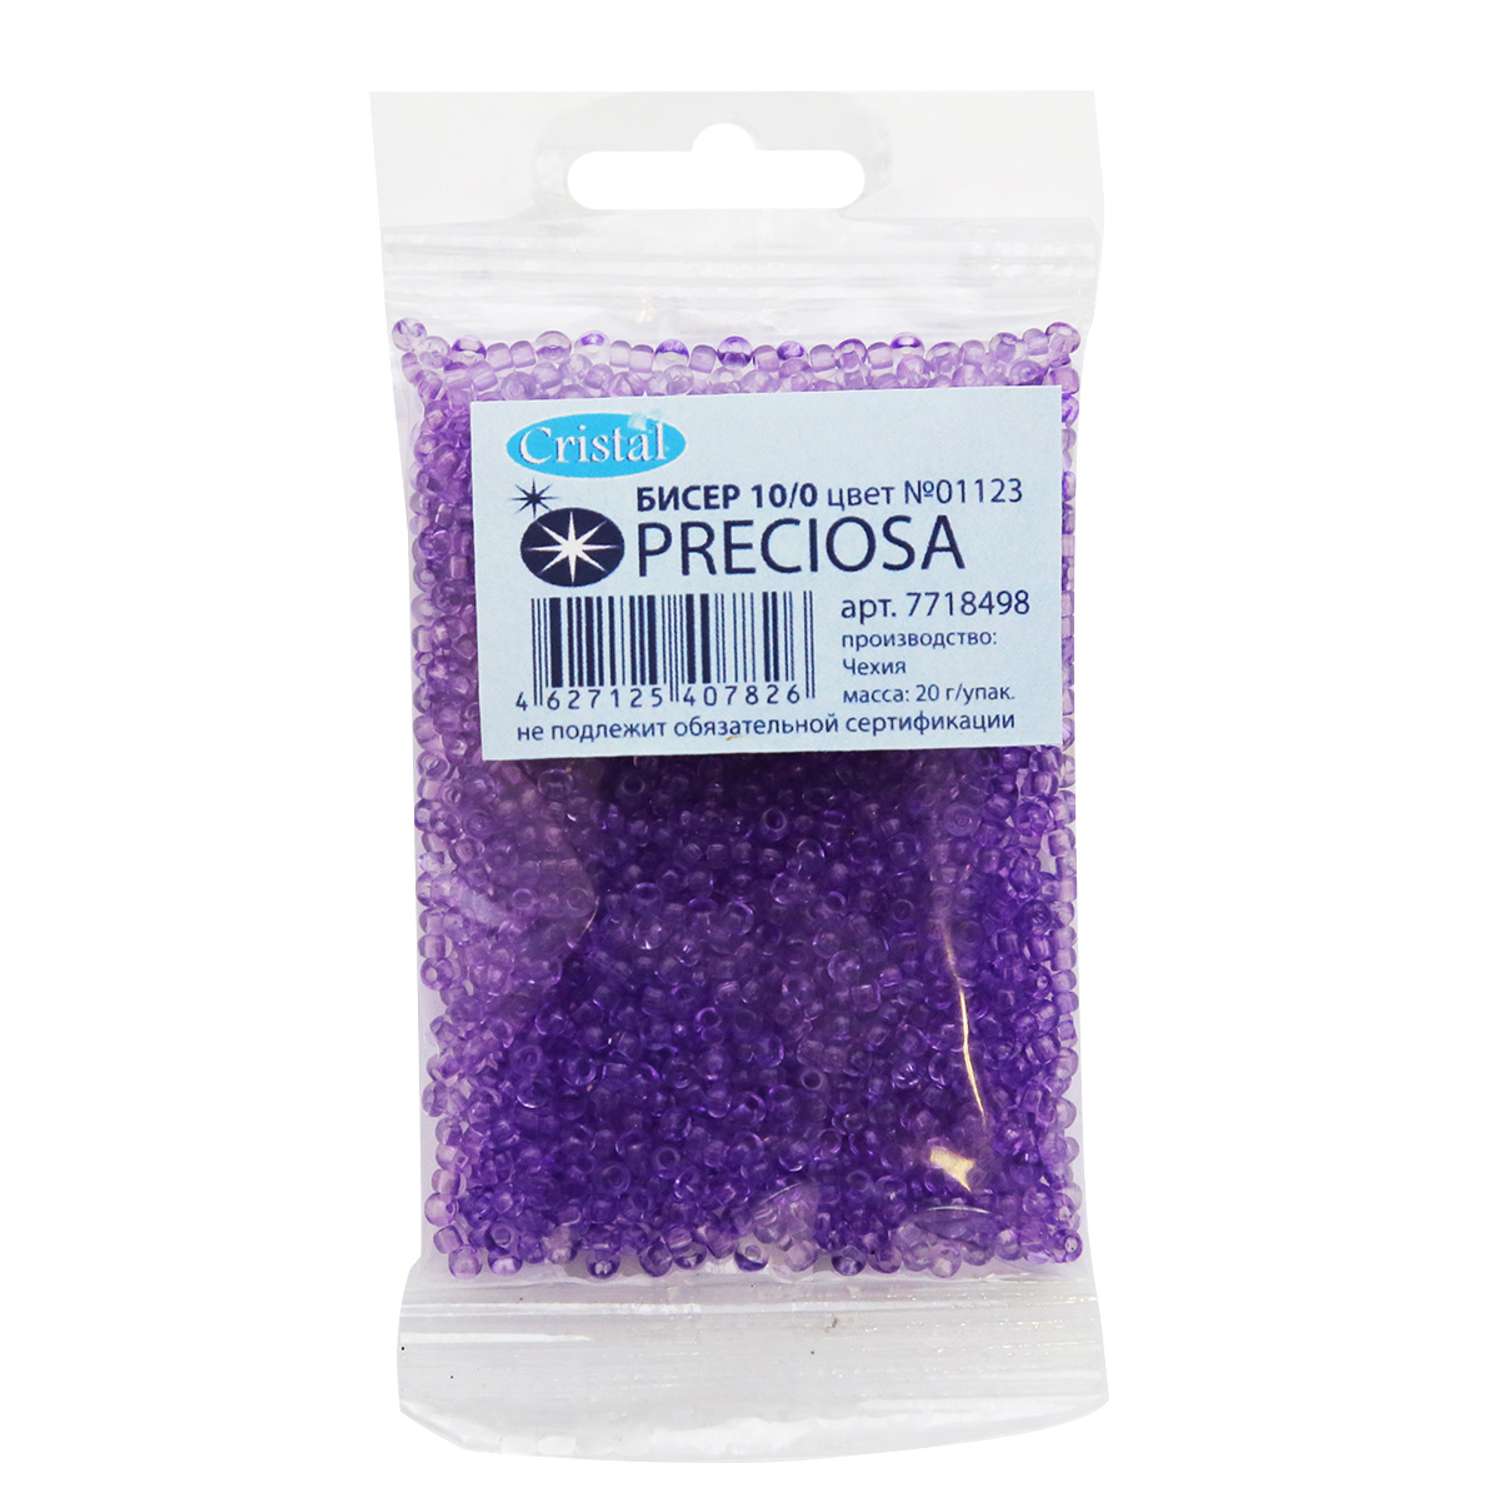 Бисер Preciosa чешский прозрачный solgel 10/0 20 гр Прециоза 01123 фиолетовый - фото 1